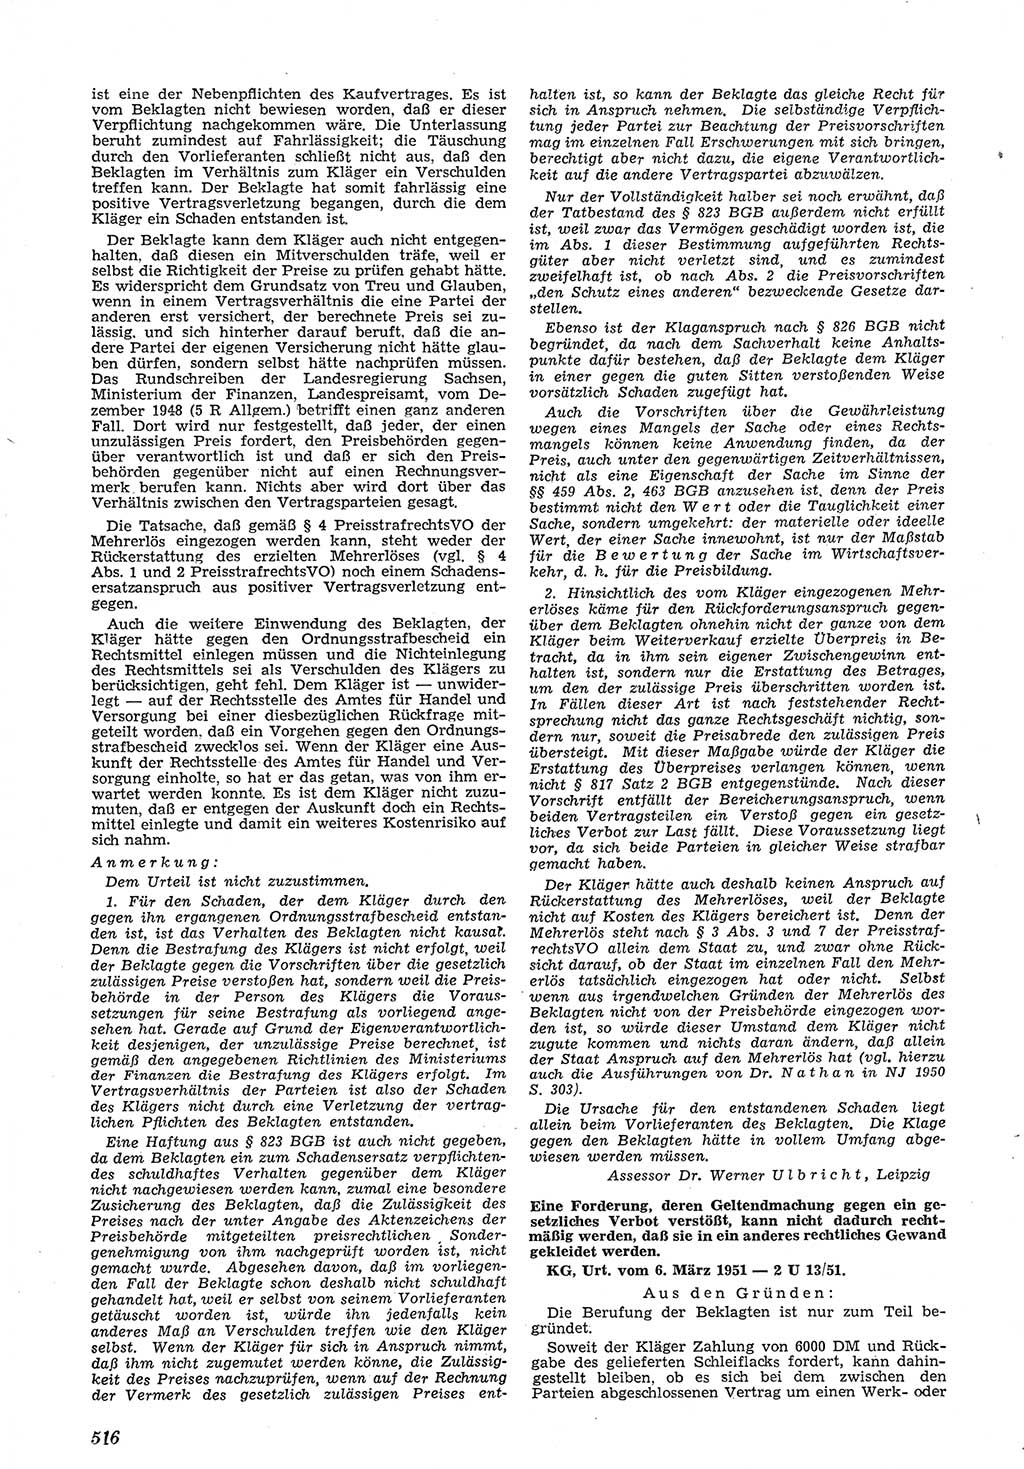 Neue Justiz (NJ), Zeitschrift für Recht und Rechtswissenschaft [Deutsche Demokratische Republik (DDR)], 5. Jahrgang 1951, Seite 516 (NJ DDR 1951, S. 516)